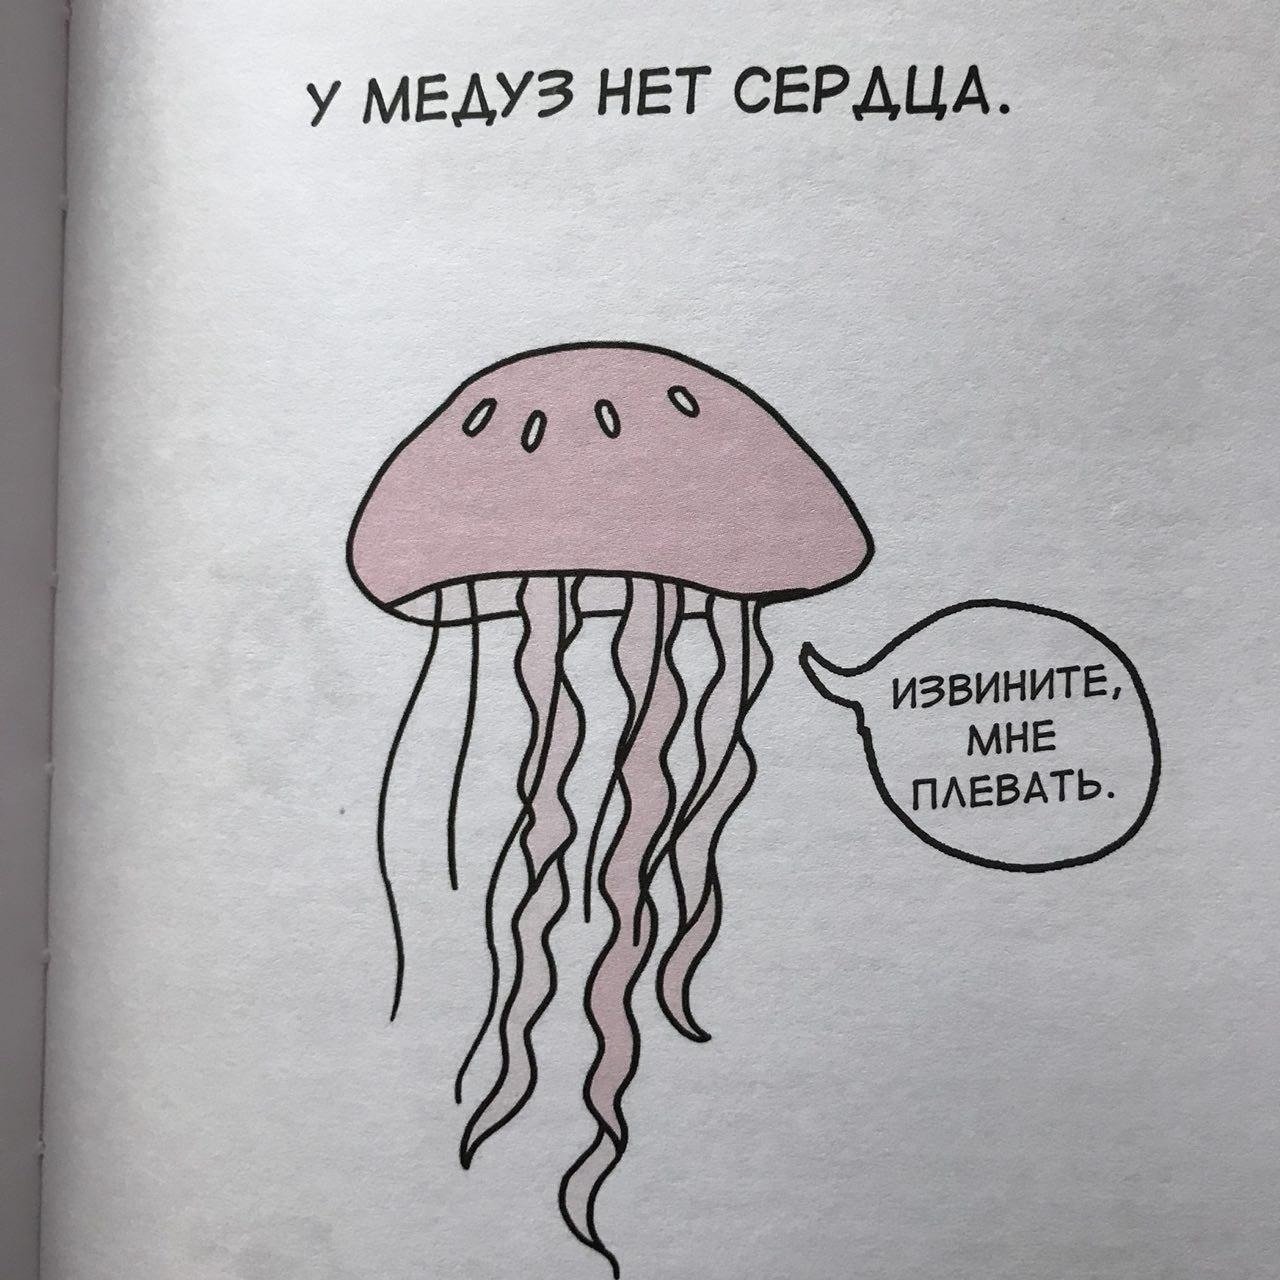 У медузы есть мозги